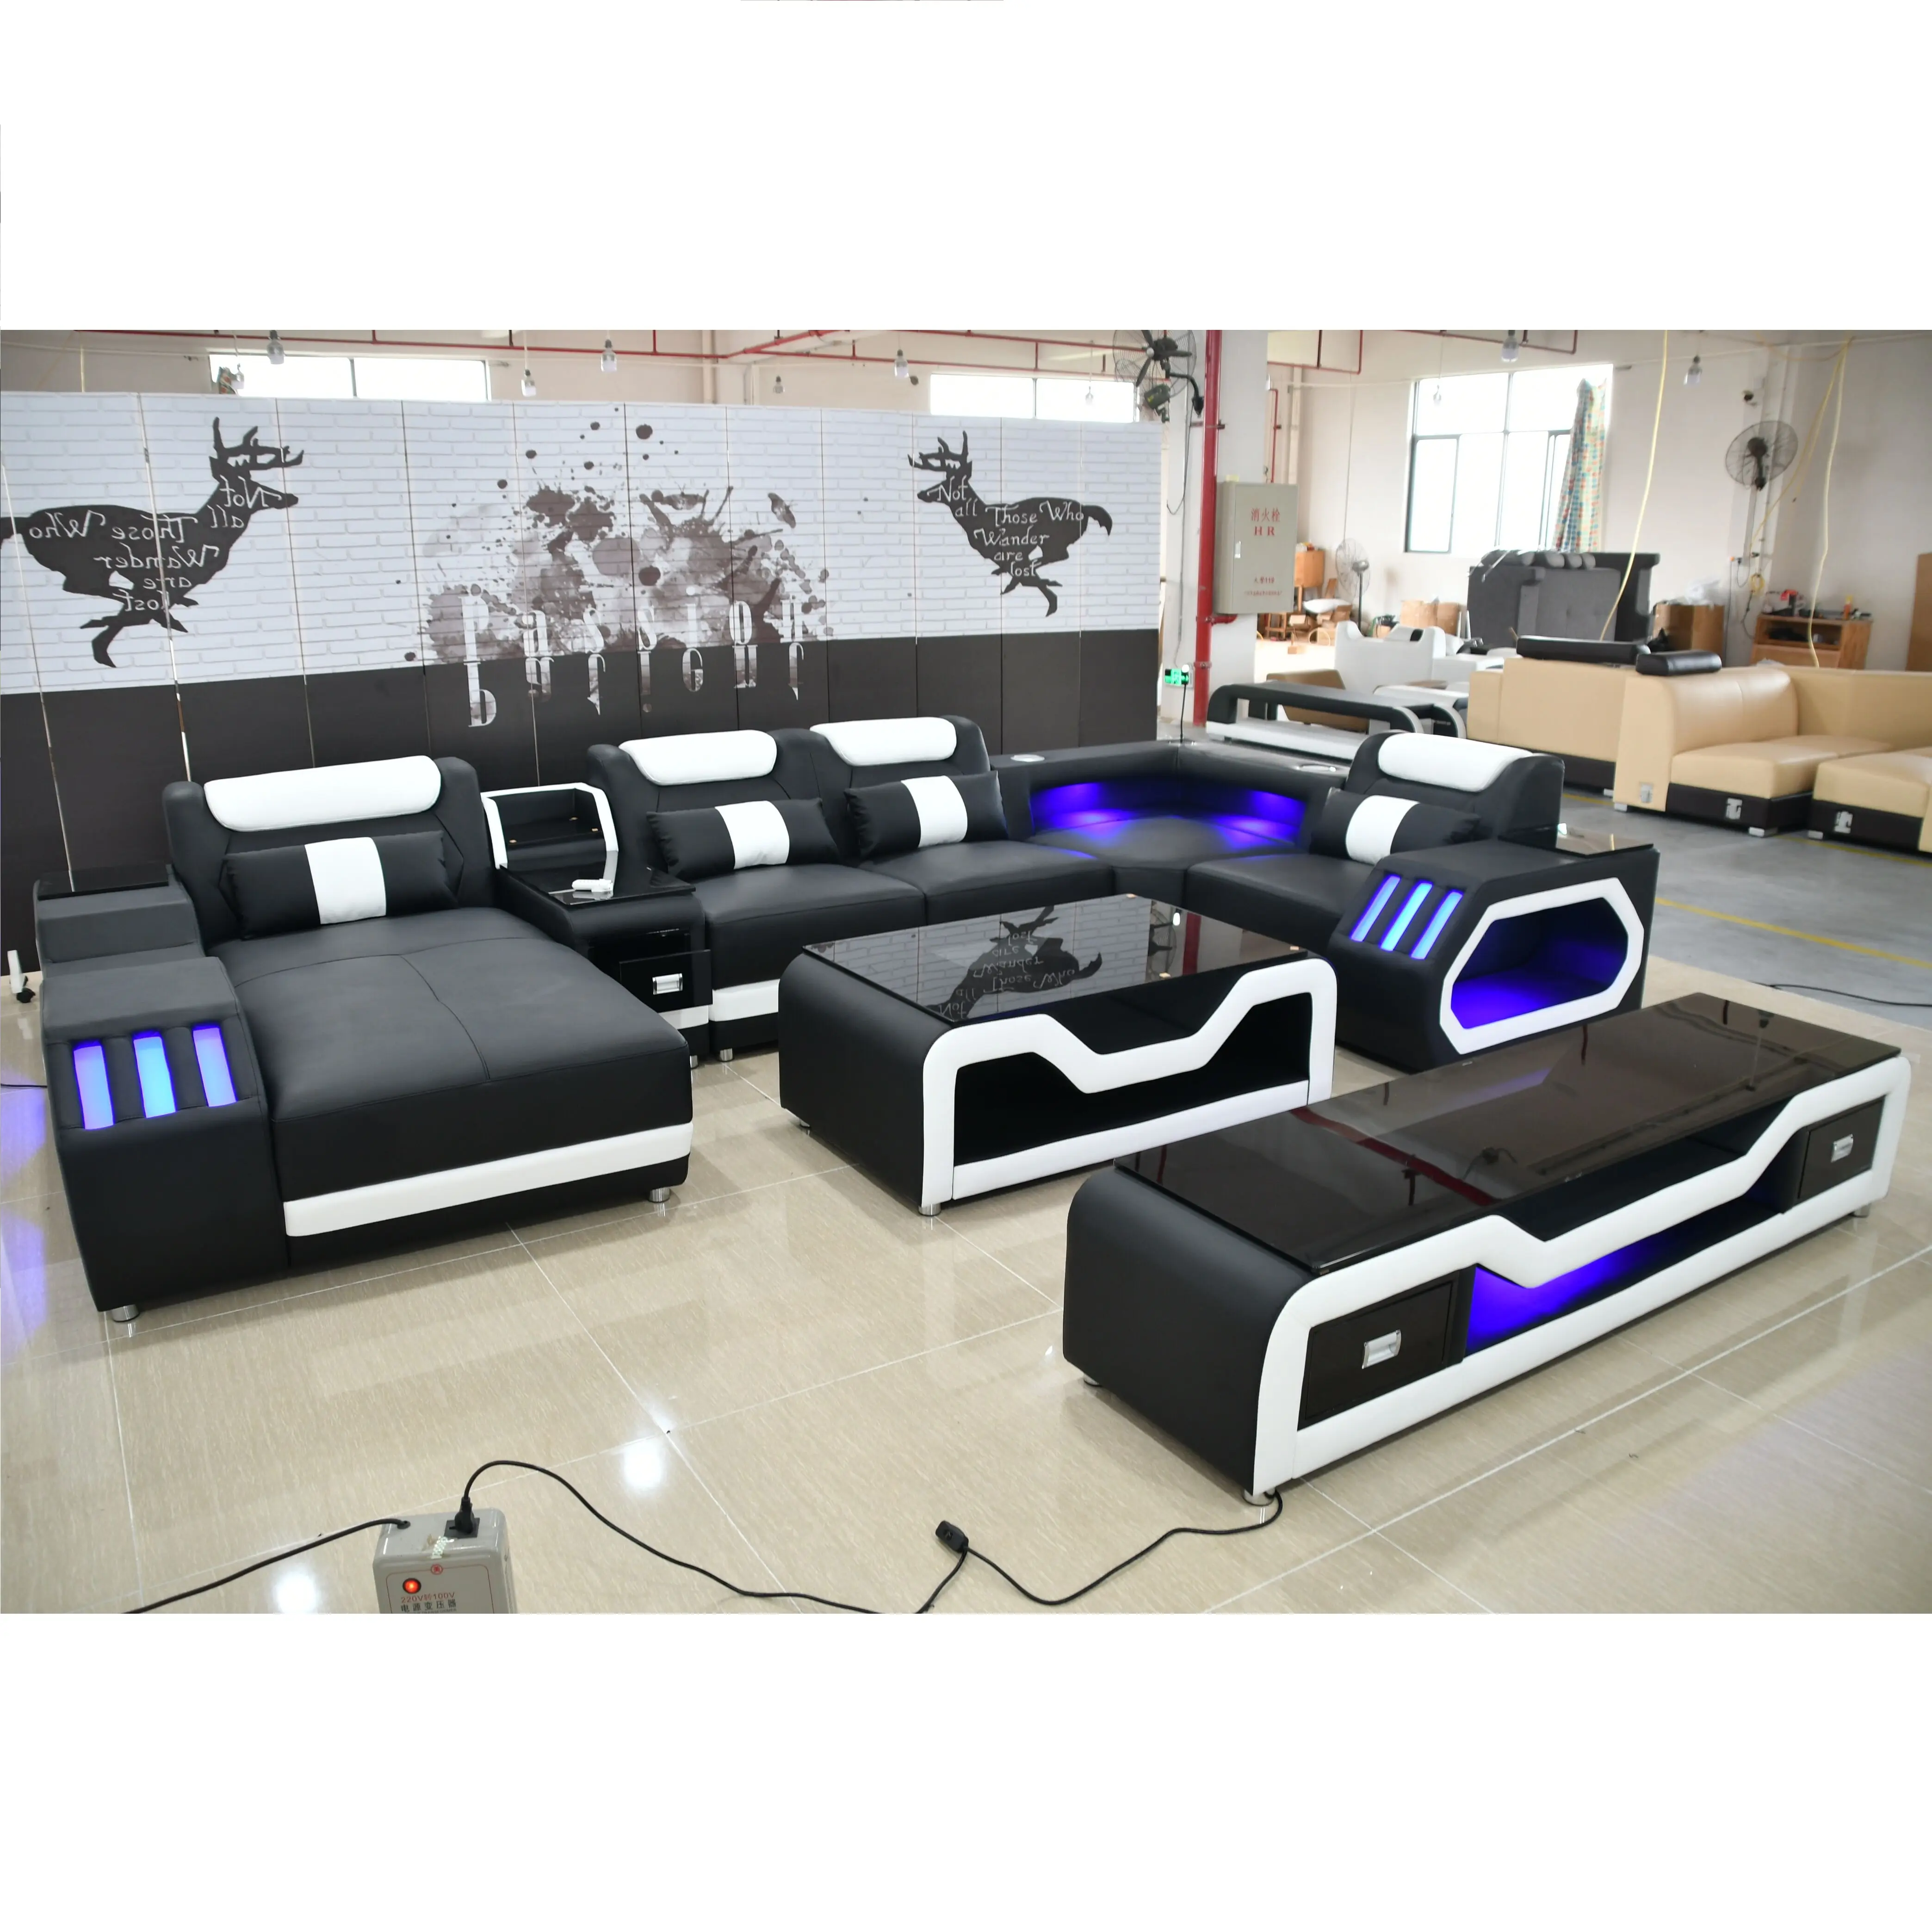 2020 Diskon Besar Desain Modern Furnitur Ruang Tamu Set Sofa Ruang Tamu Kualitas Terbaik Sofa Kulit Hitam